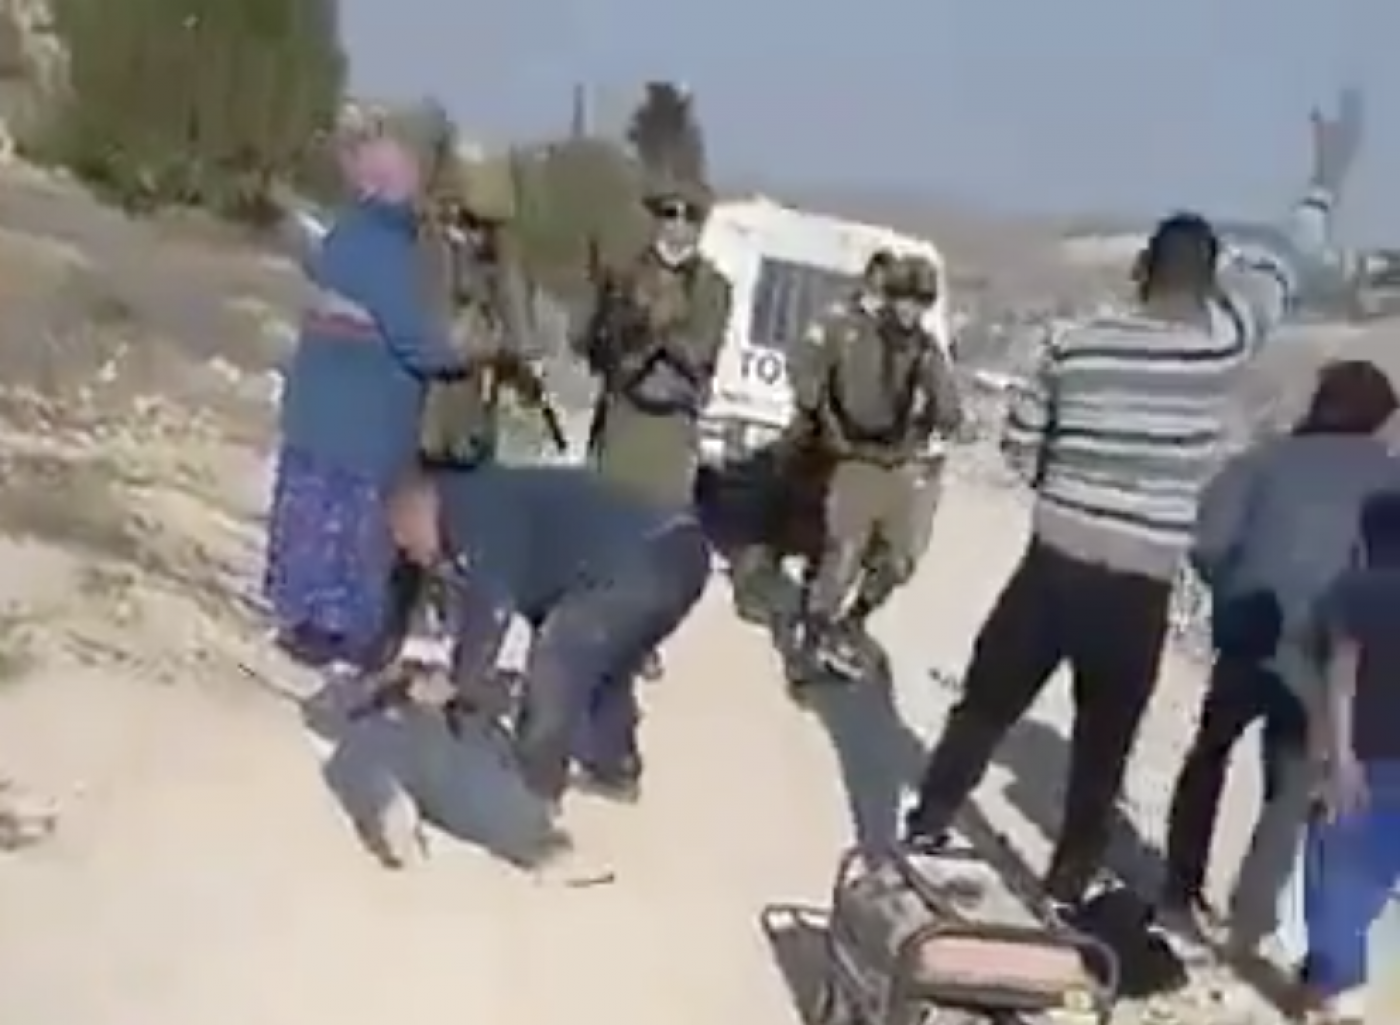 İsrail askerleri elektrik jeneratörüne el konulmasını engellemeye çalışan Filistinli genci boynundan vurdu